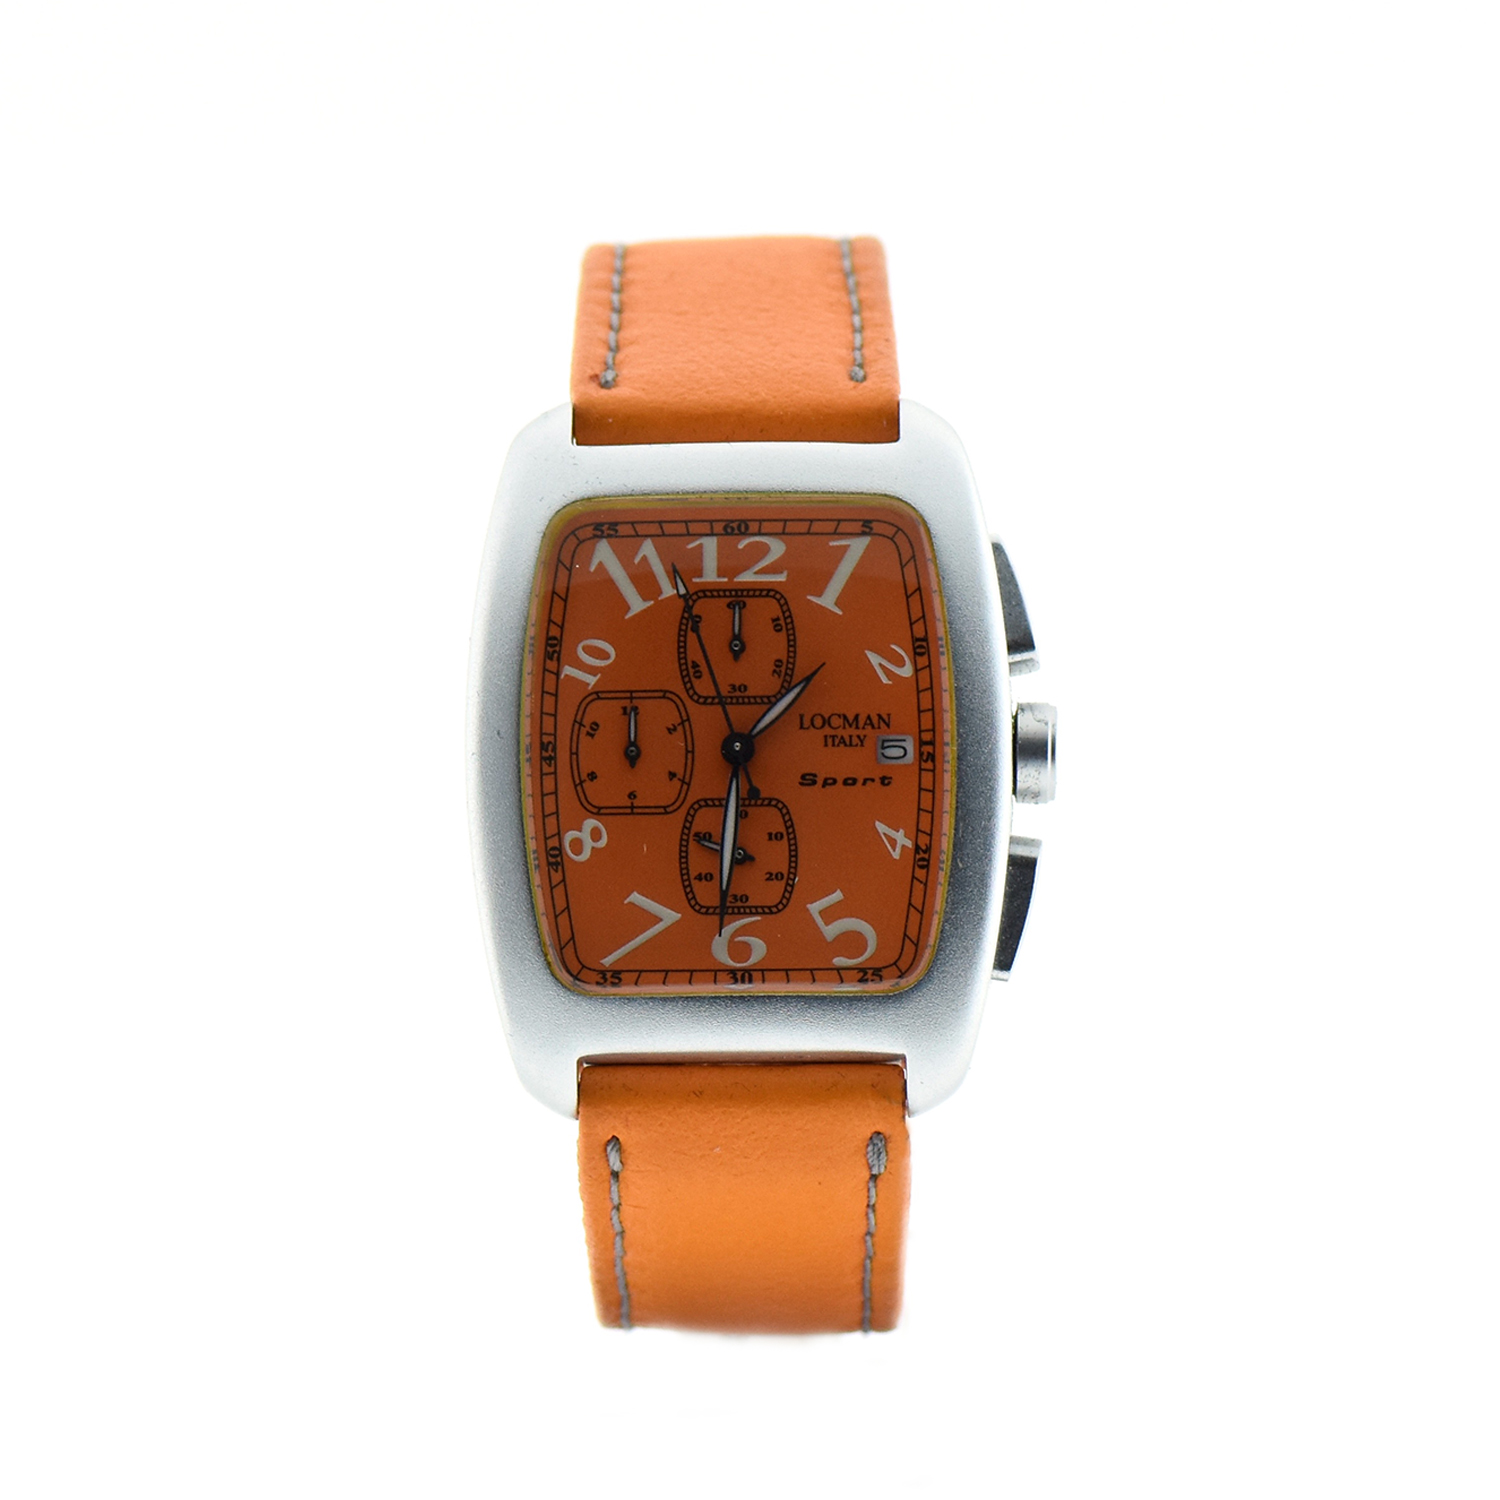 Oro Locman modello Sport cronografo cassa alluminio datario cinturino pelle arancione